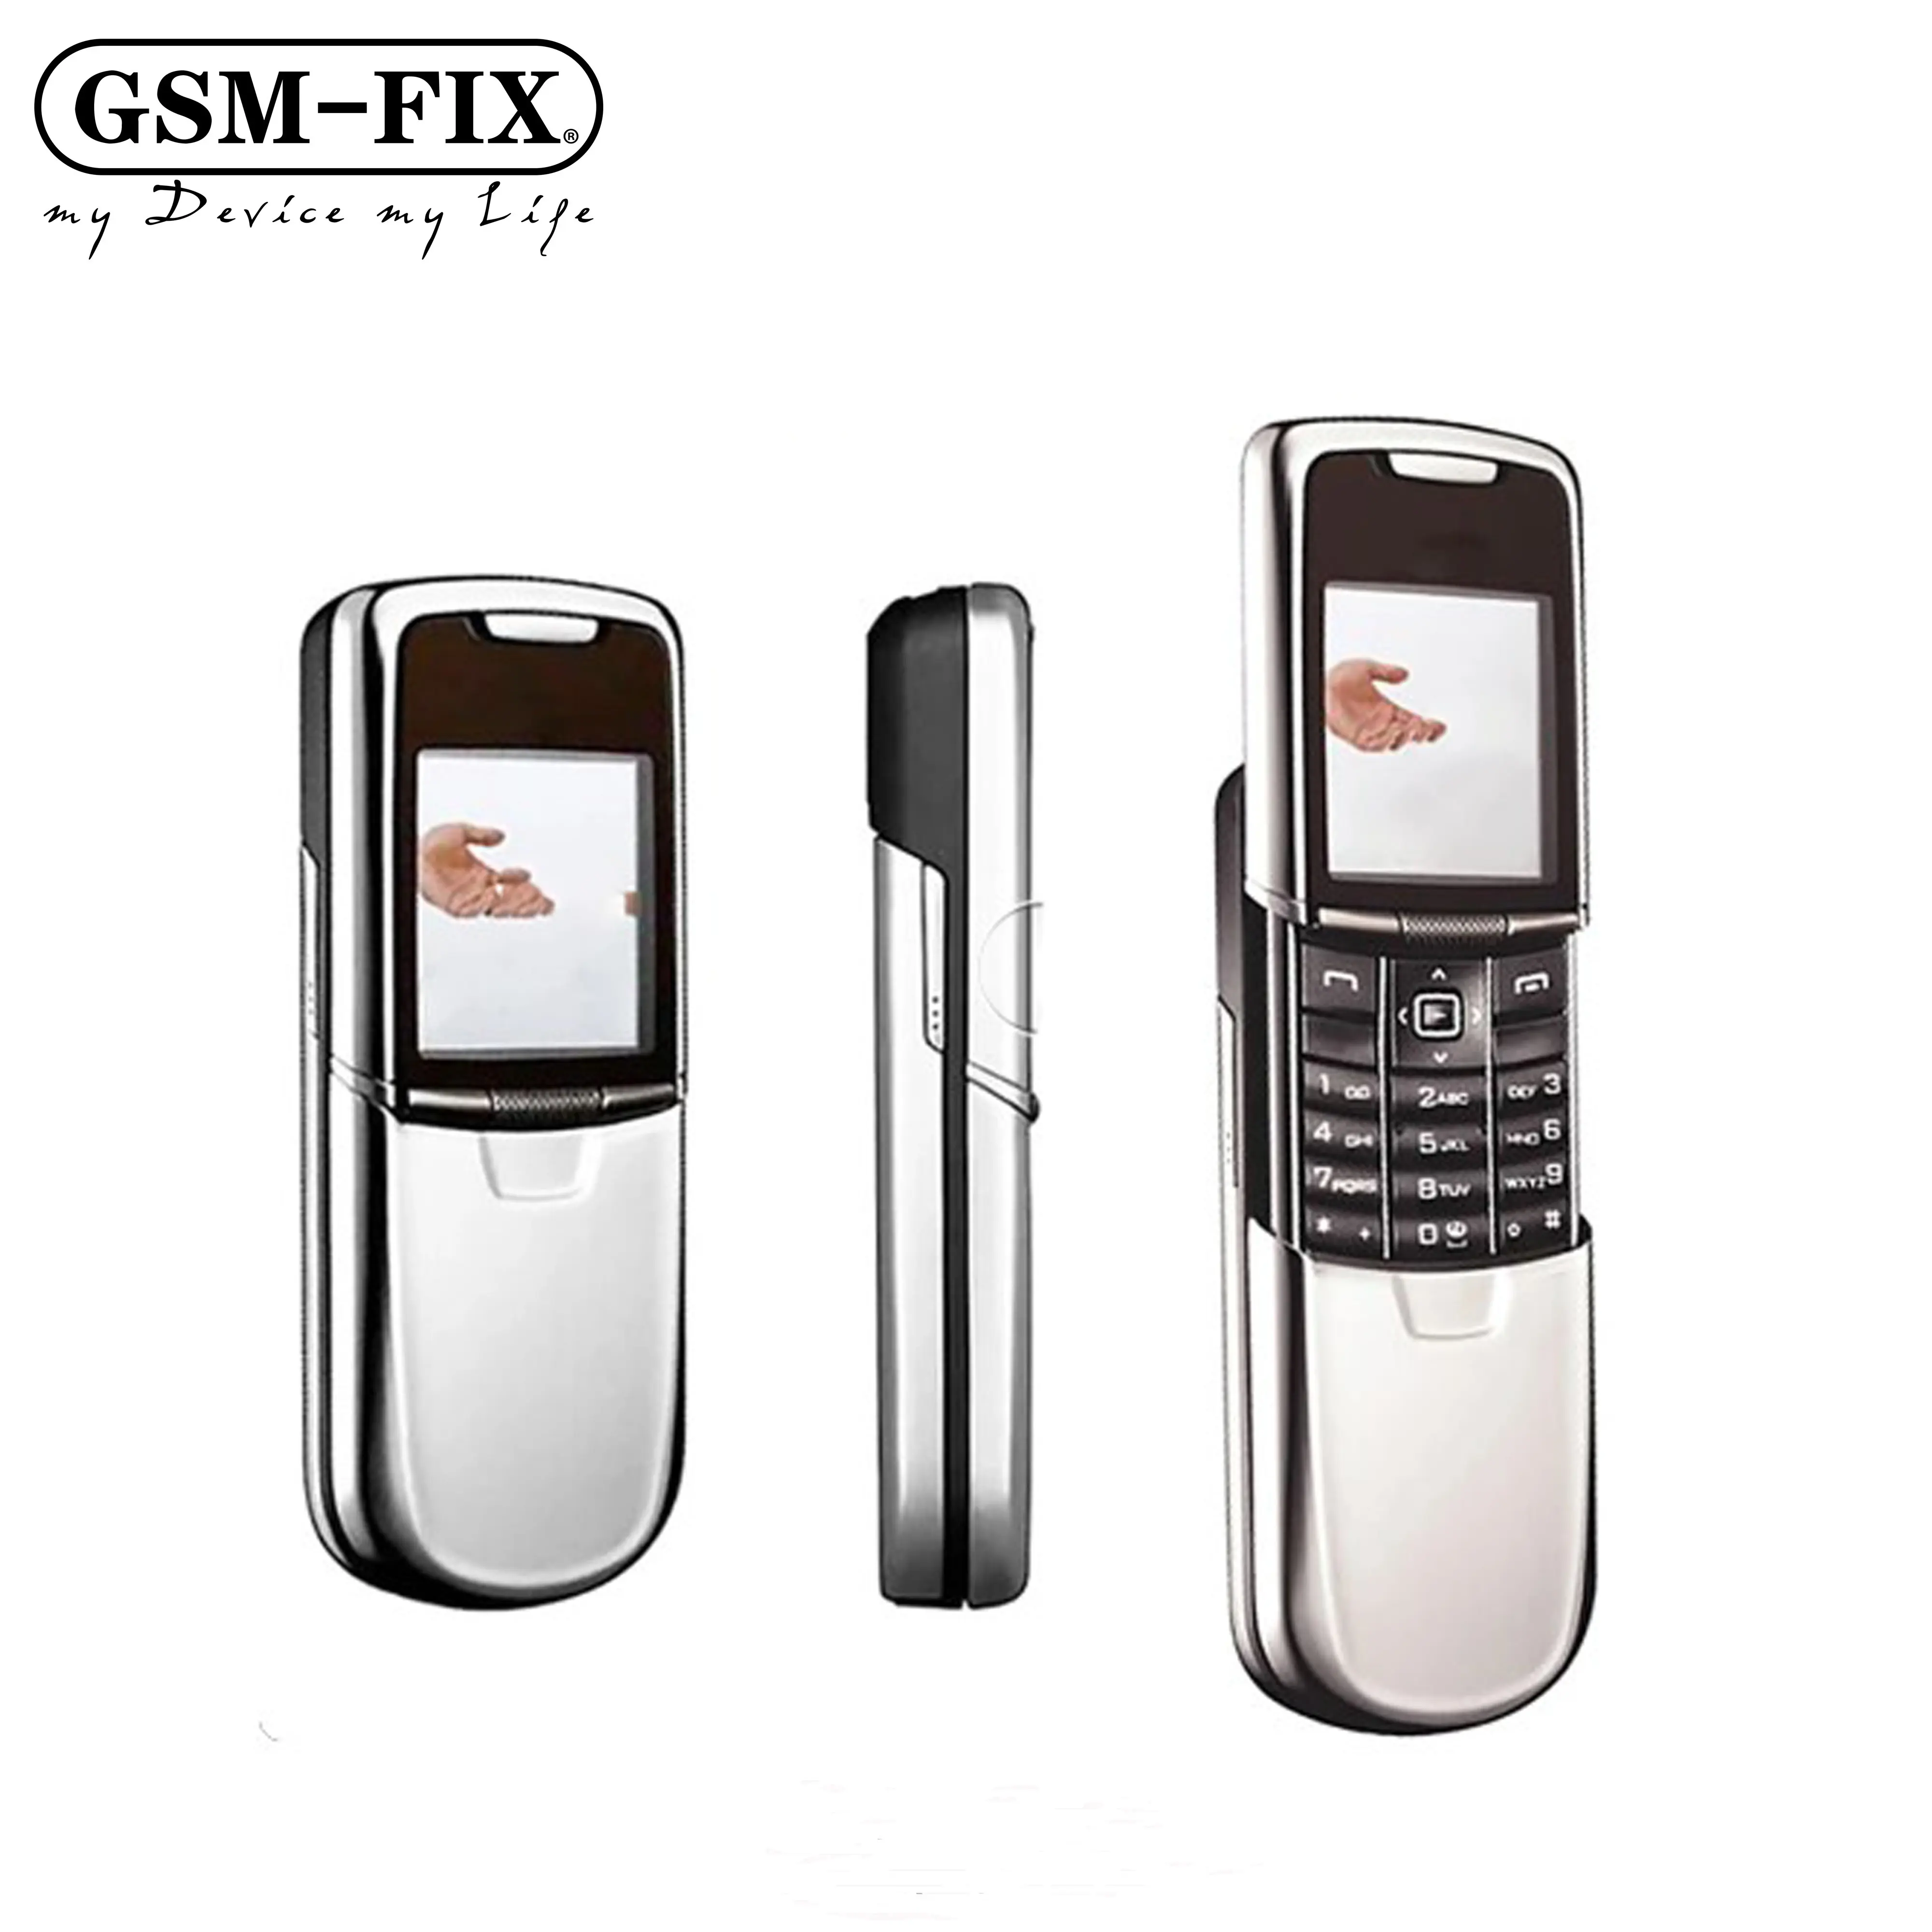 GSM-FIX iyi satış klasik lüks orijinal kaymak sevimli cep telefonu GSM kamera 3G toptan Nokia cep telefonu için 8800